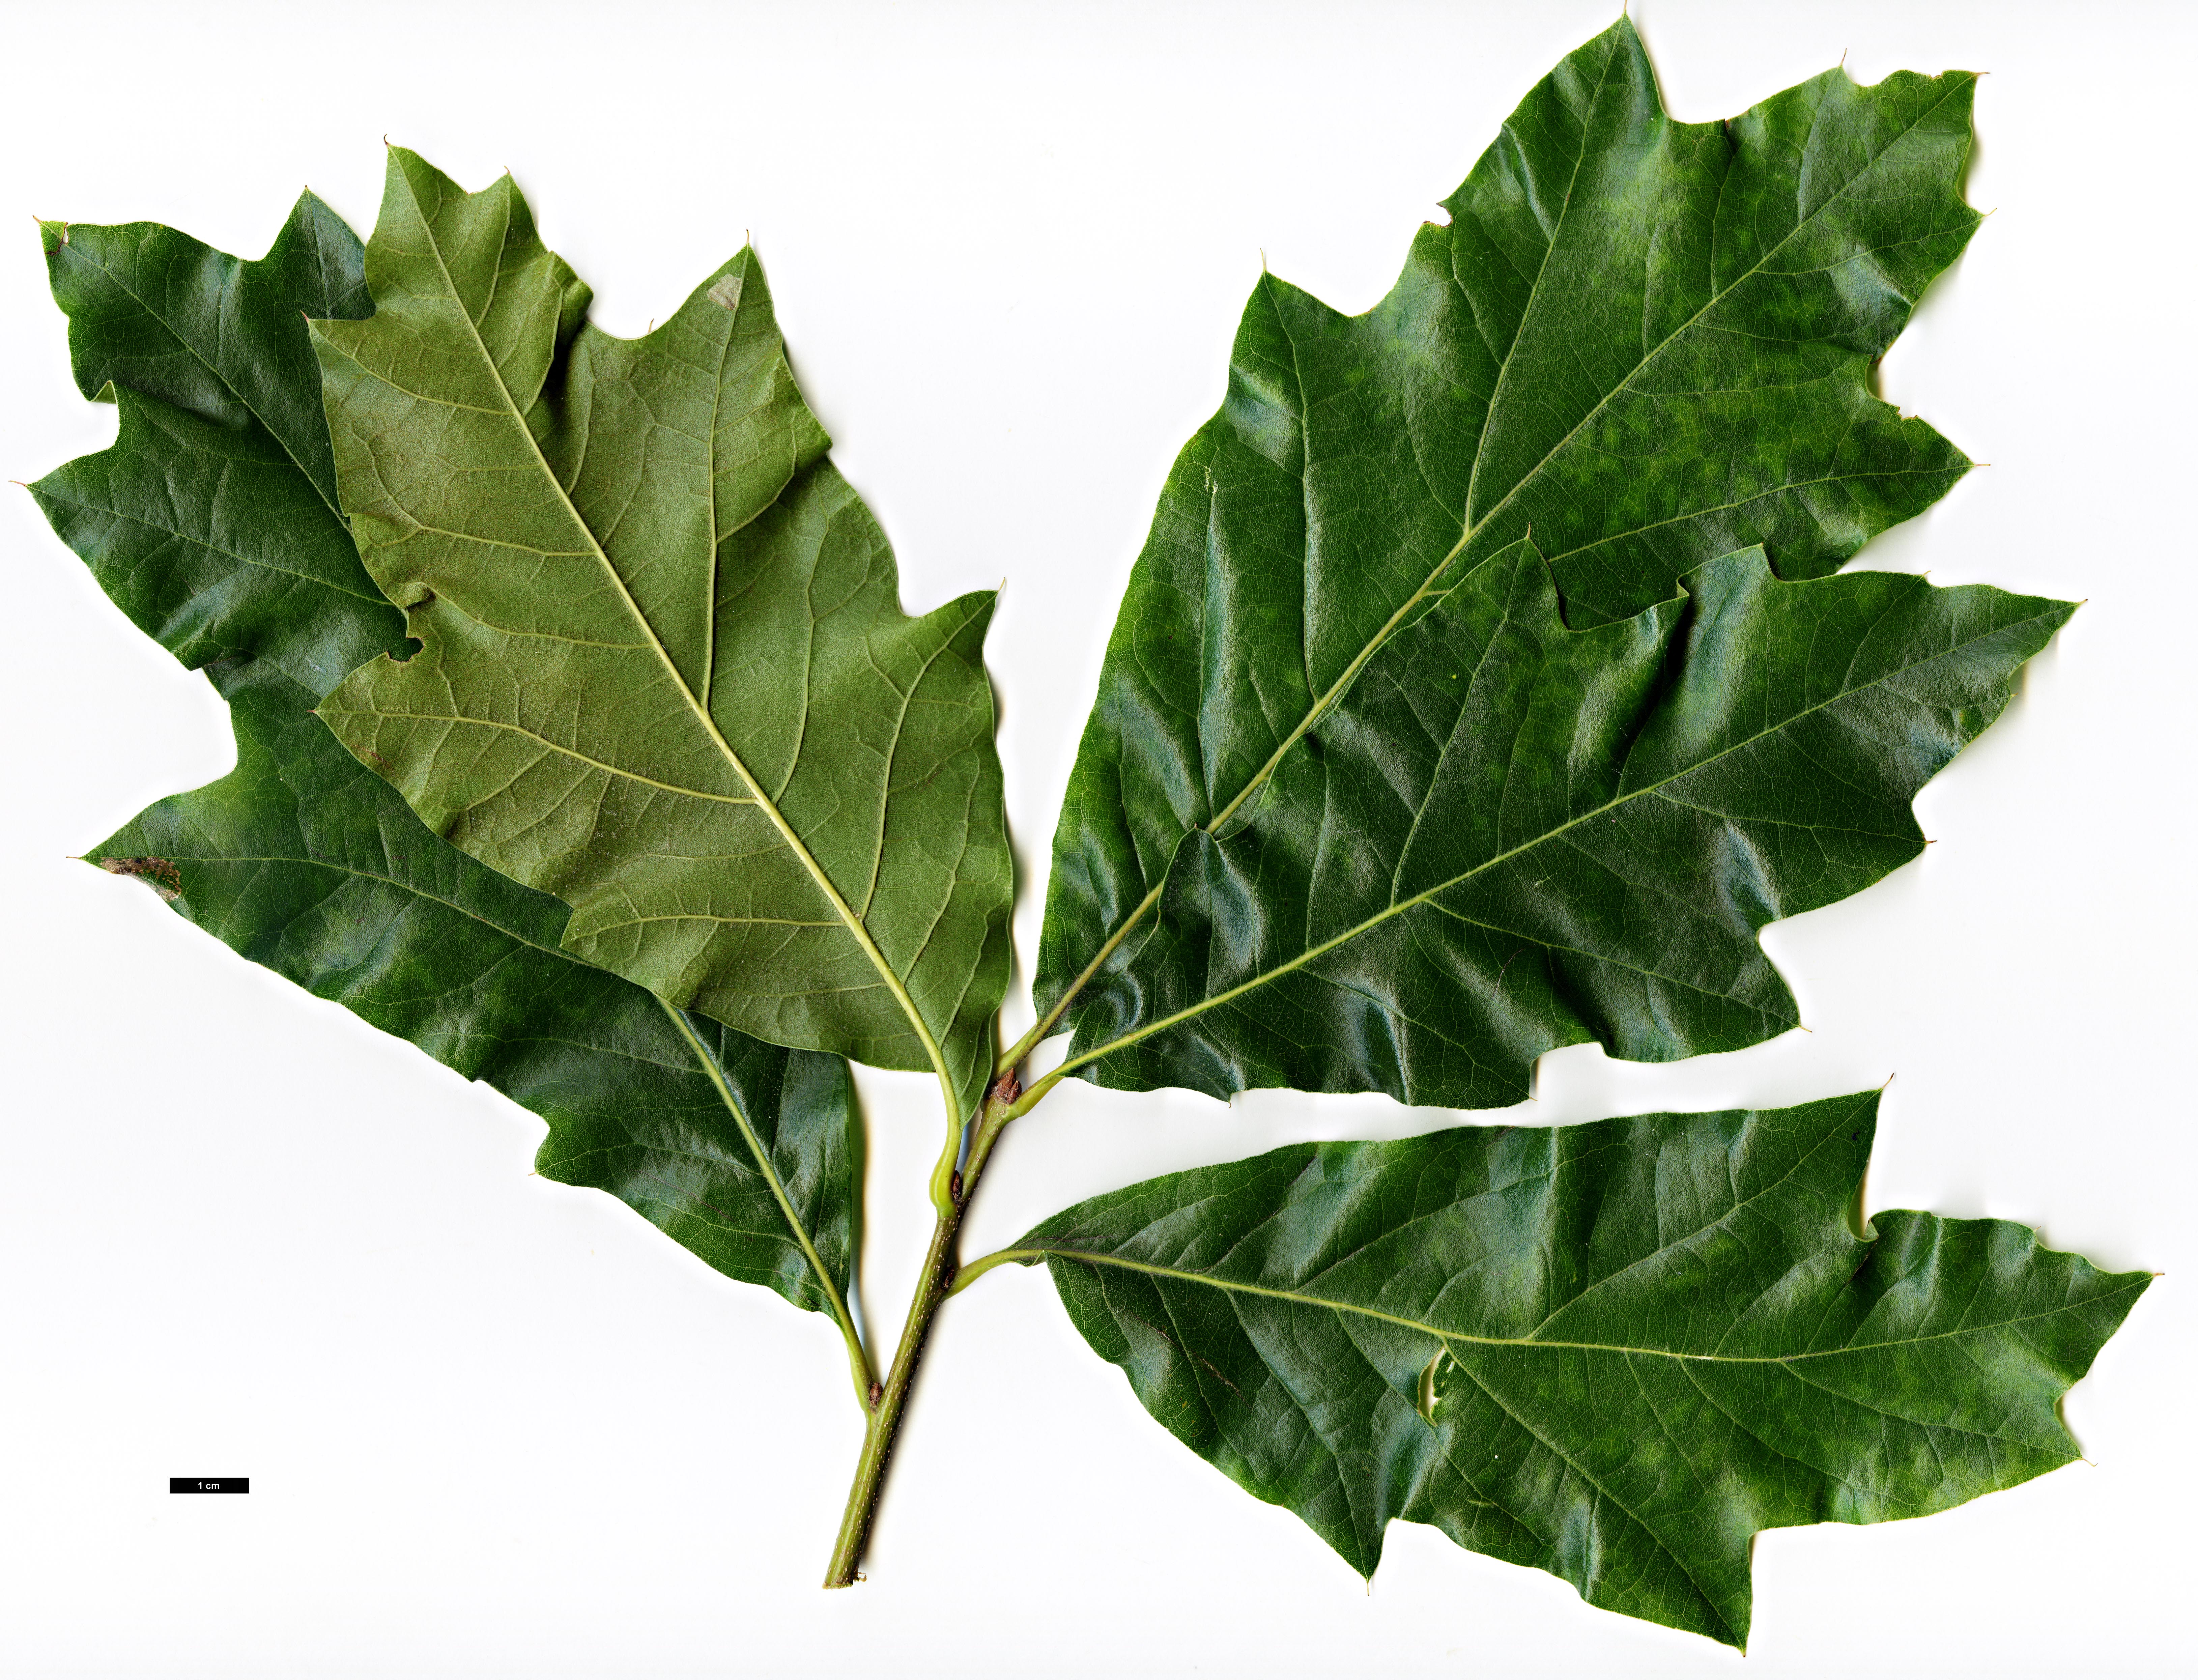 High resolution image: Family: Fagaceae - Genus: Quercus - Taxon: ×tridentata (Q.imbricaria × Q.marilandica)